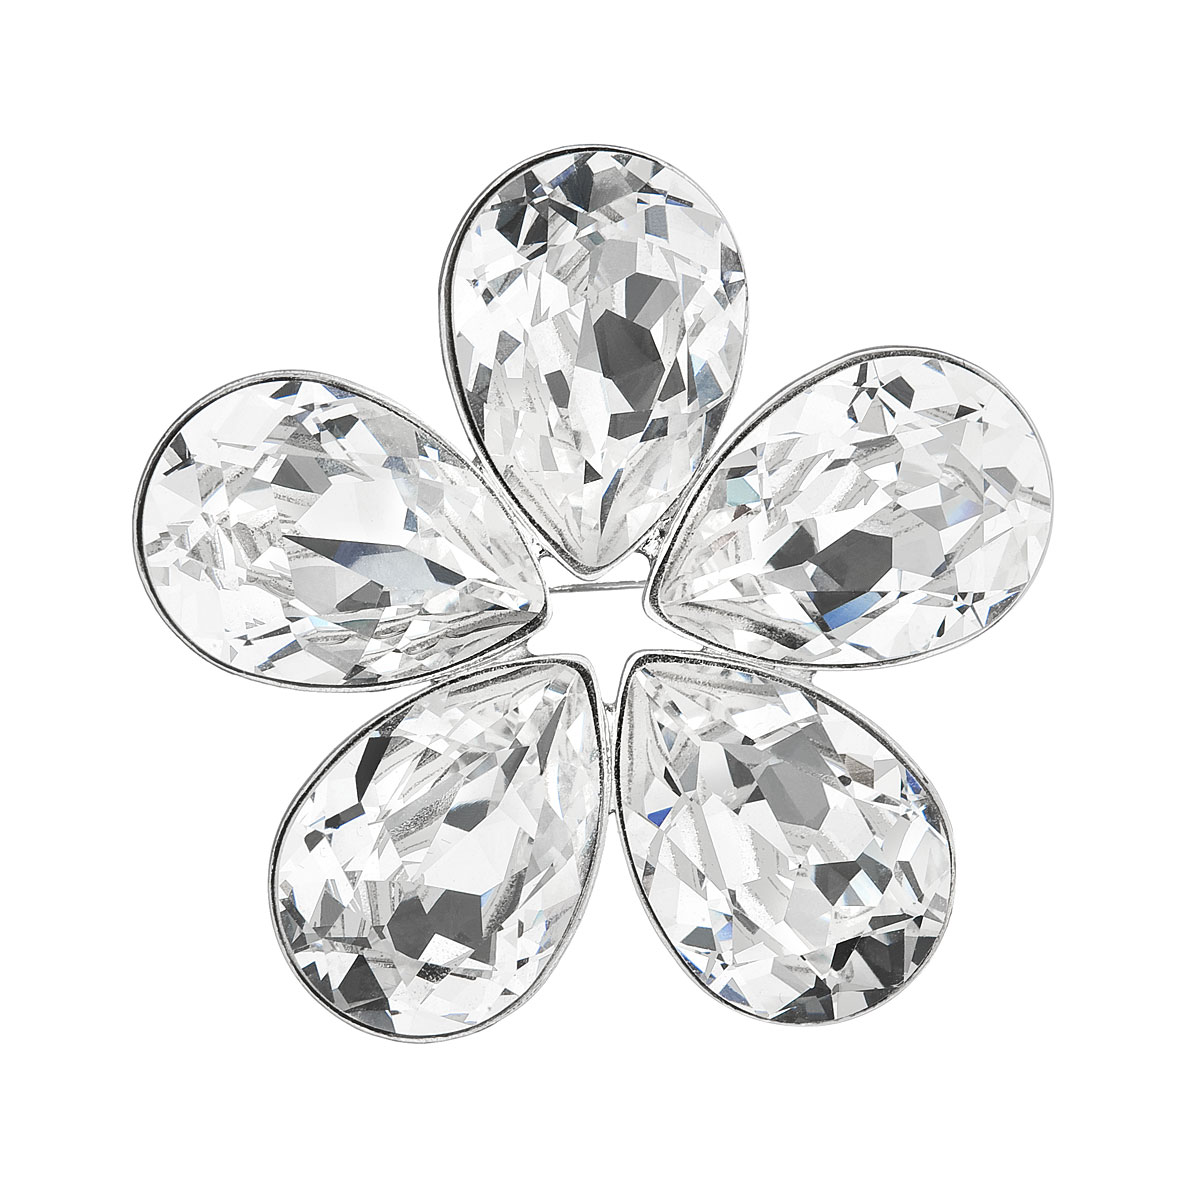 Brož bižuterie se Swarovski krystaly bílá kytička 58003.1